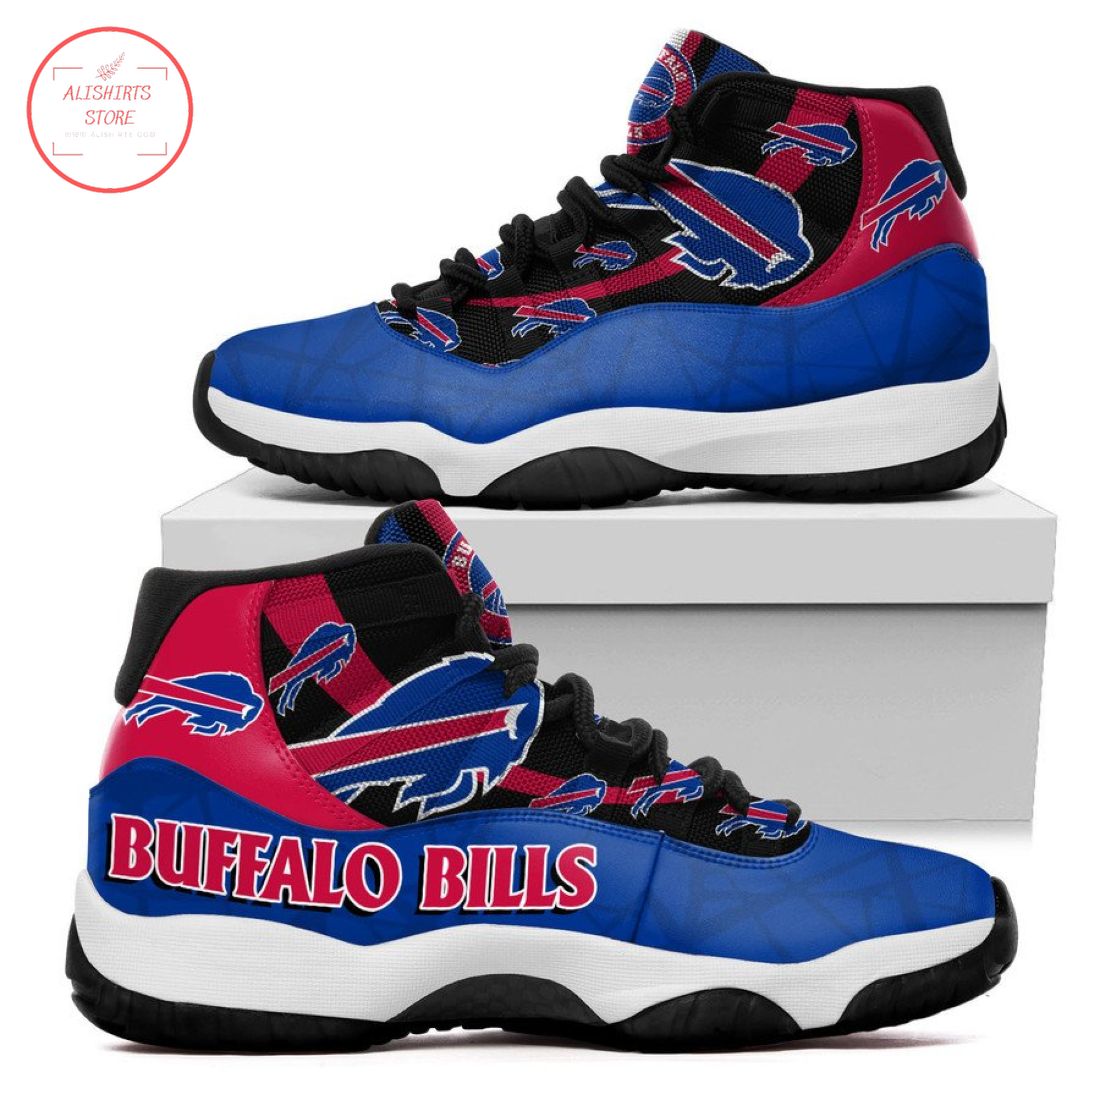 NFL Buffalo Bills New Air Jordan 11 Sneakers Shoes